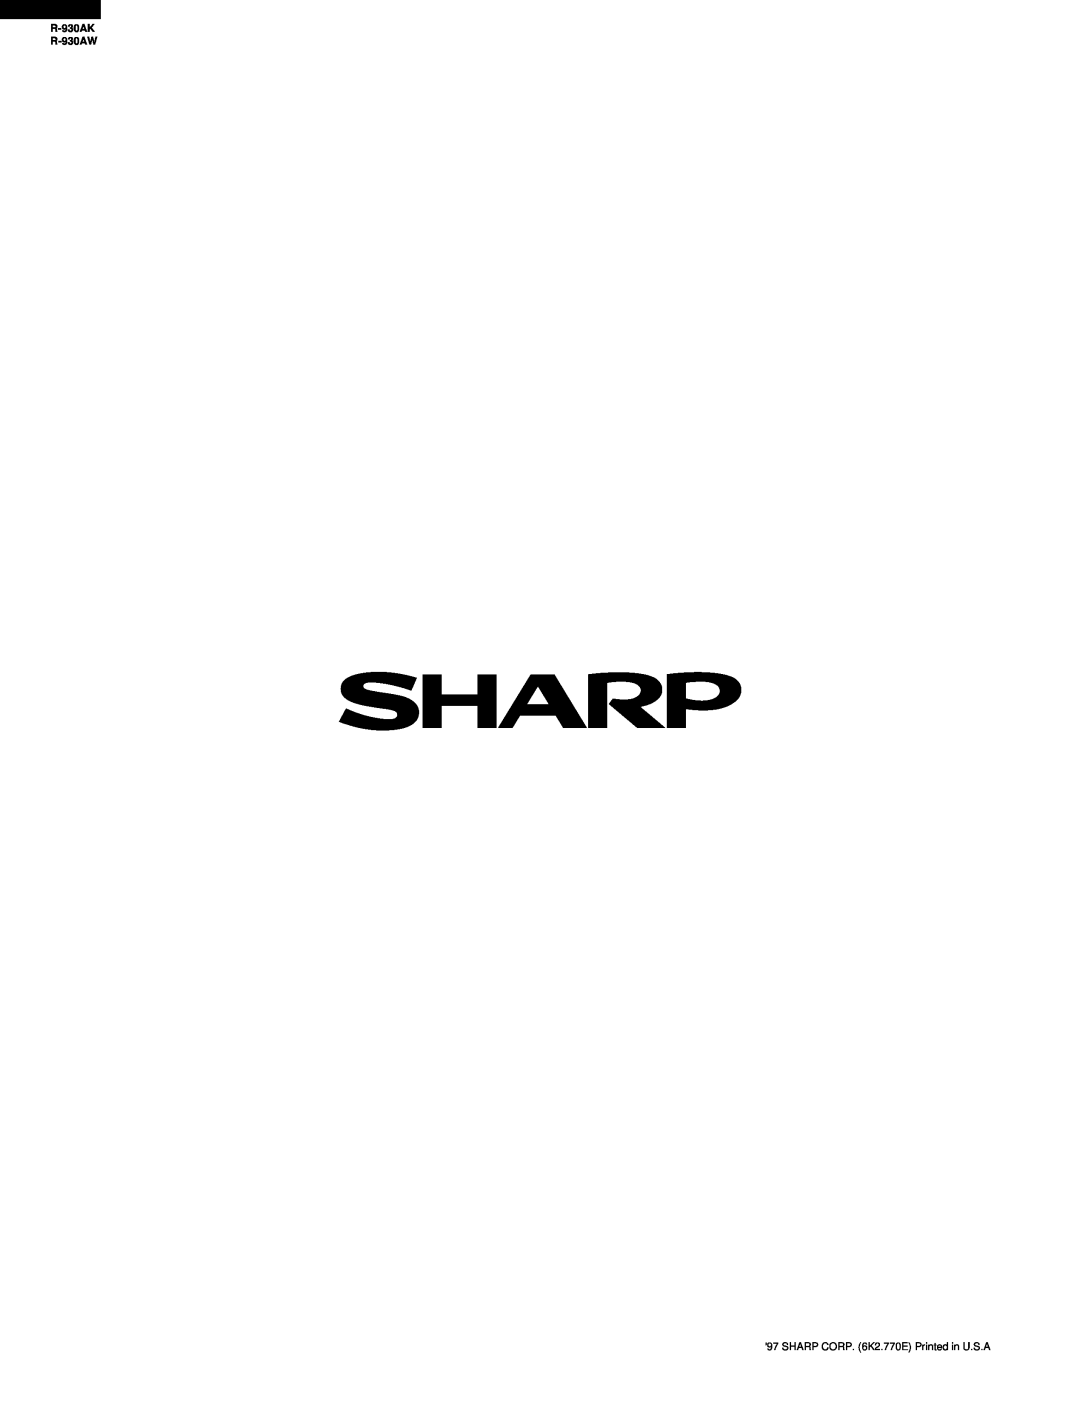 Sharp service manual R-930AK R-930AW, SHARP CORP. 6K2.770E Printed in U.S.A 